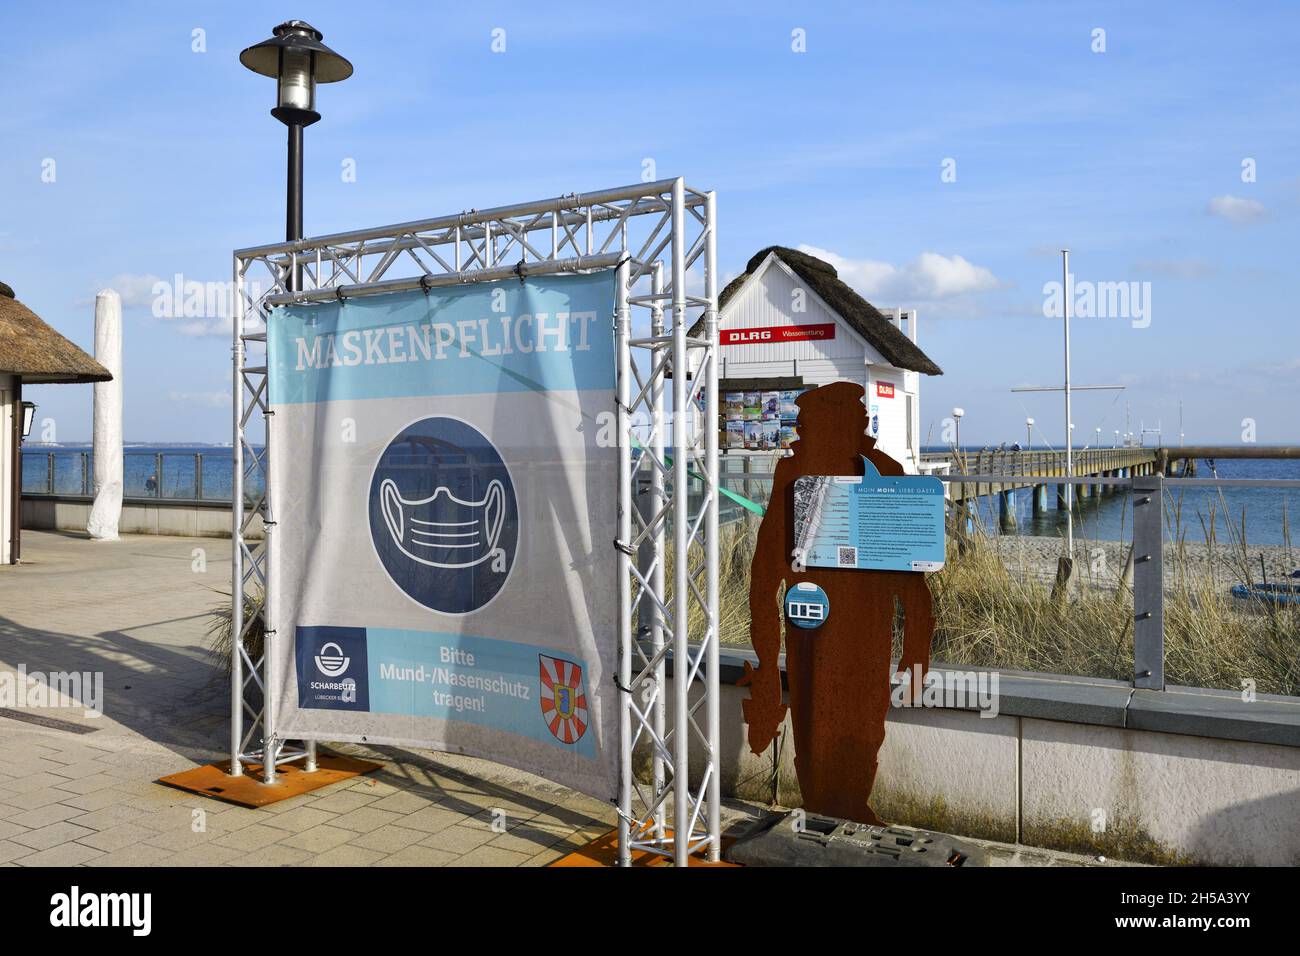 Schild in Haffkrug weist auf Maskenpflicht hin, Scharbeutz, Schleswig-Holstein, Deutschland, Europa Stock Photo